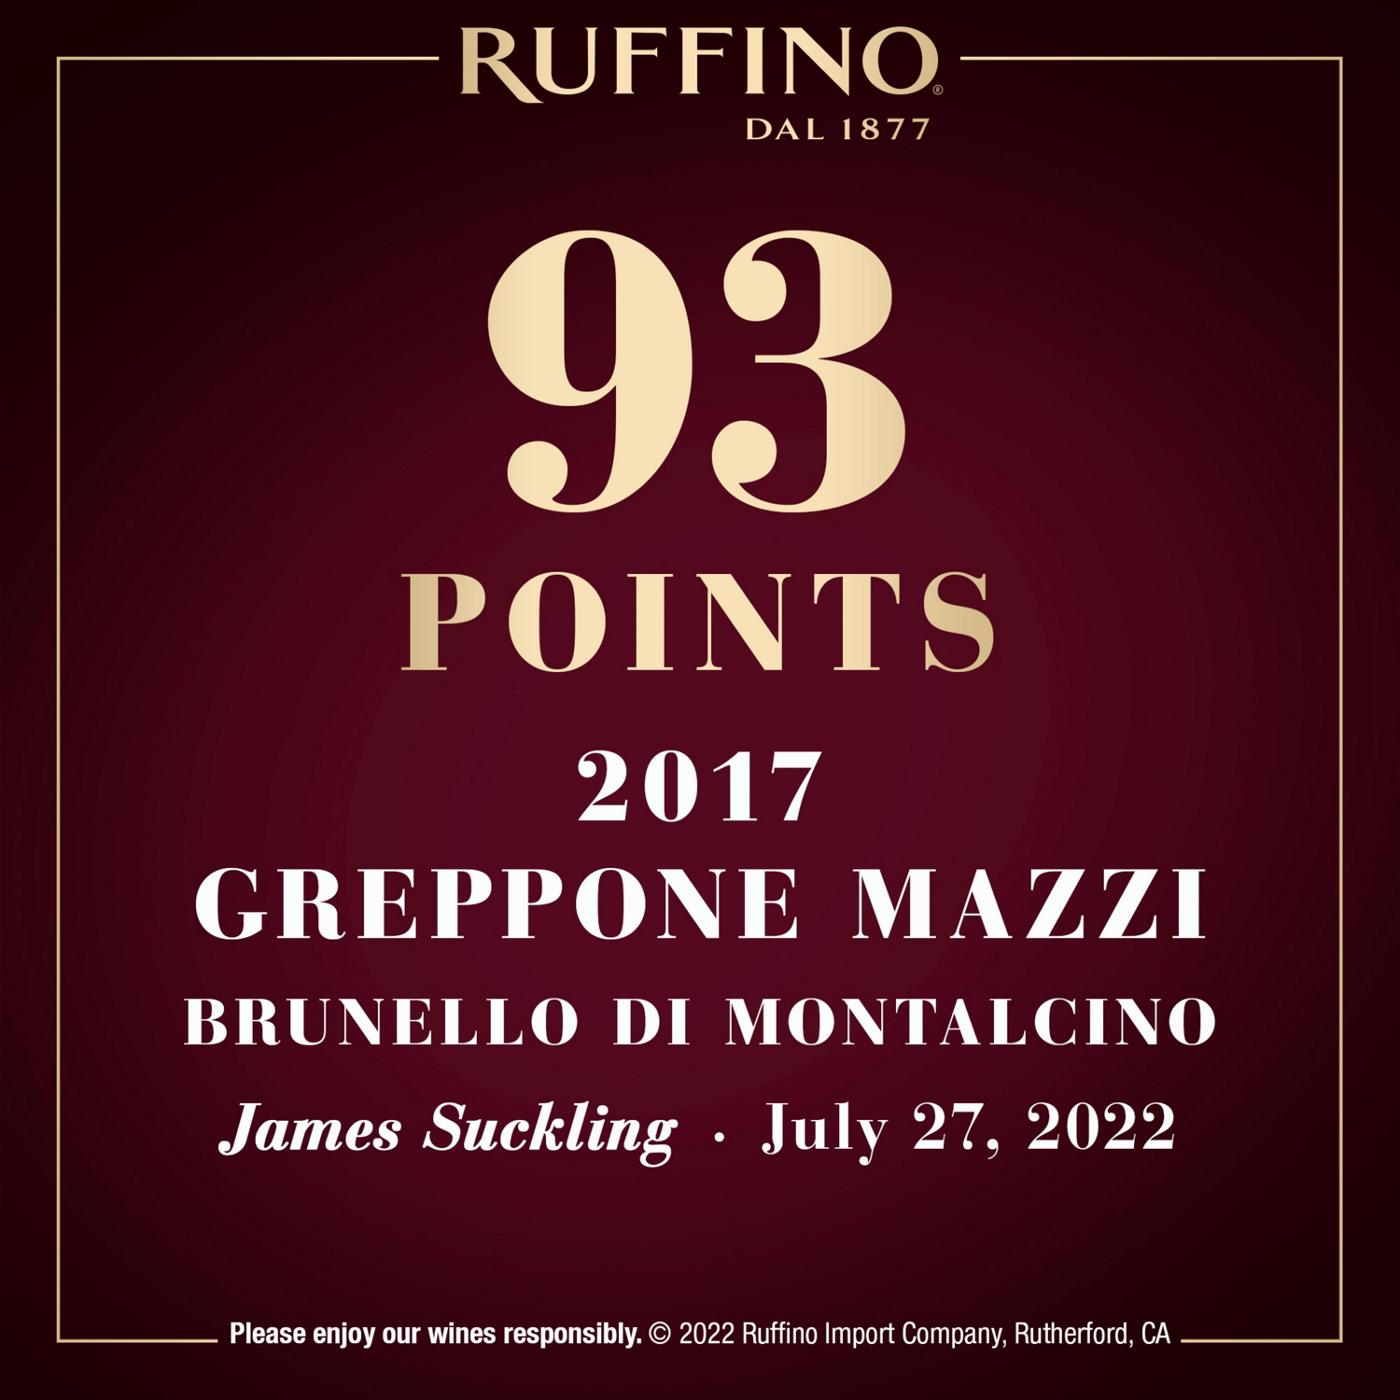 Ruffino Greppone Mazzi Brunello Di Montalcino DOCG Sangiovese Grosso, Italian Red Wine 750 mL Bottle; image 8 of 11